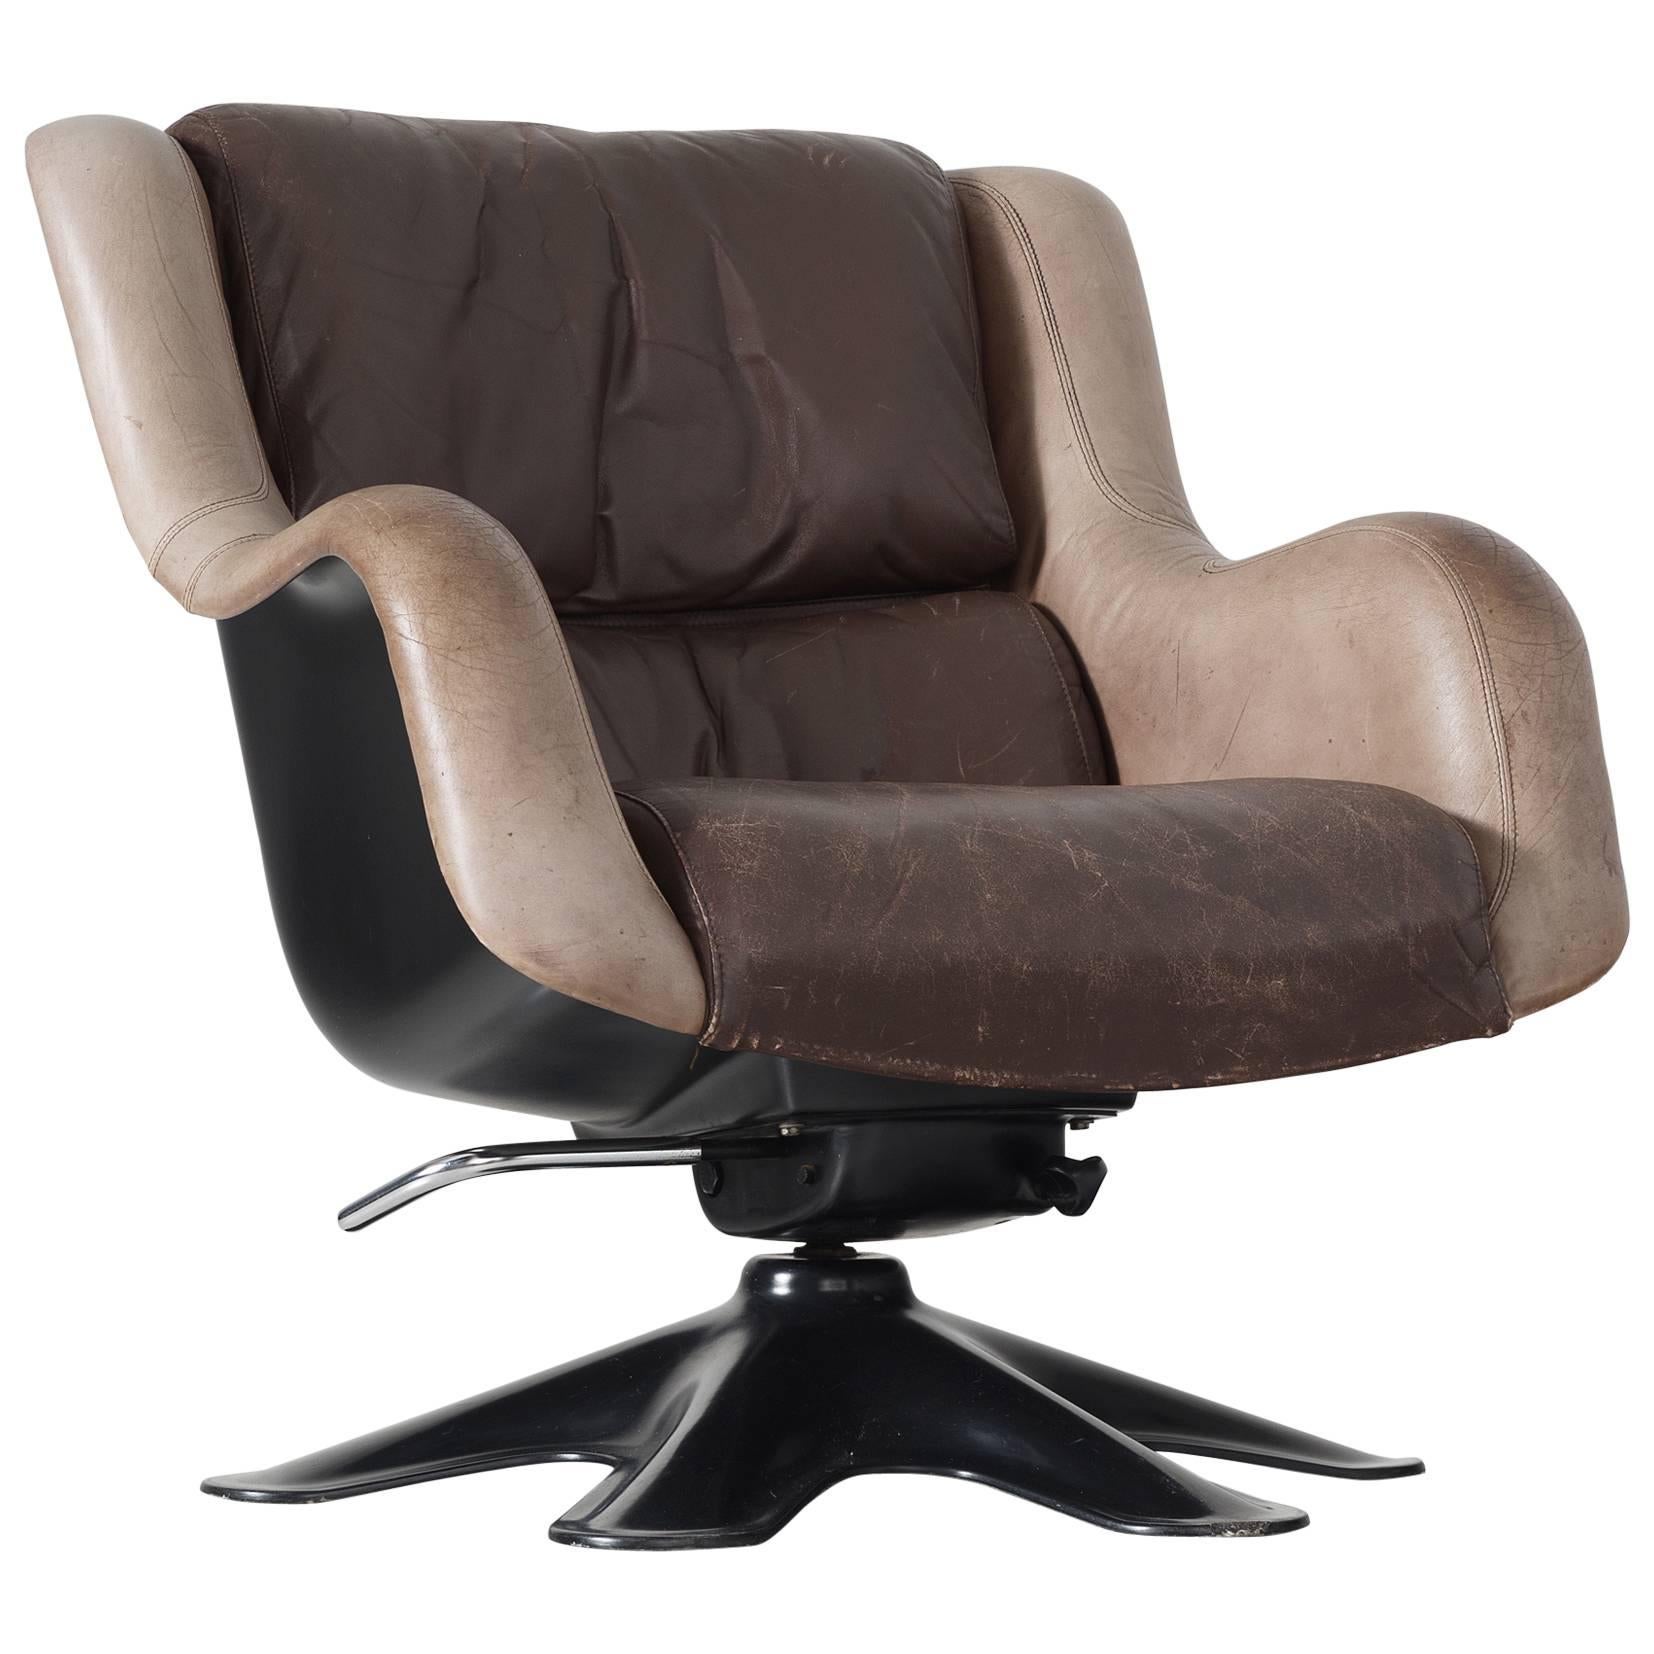 Yrjo Kukkapuro 'Karuselli' Lounge Chair in Brown Leather Upholstery